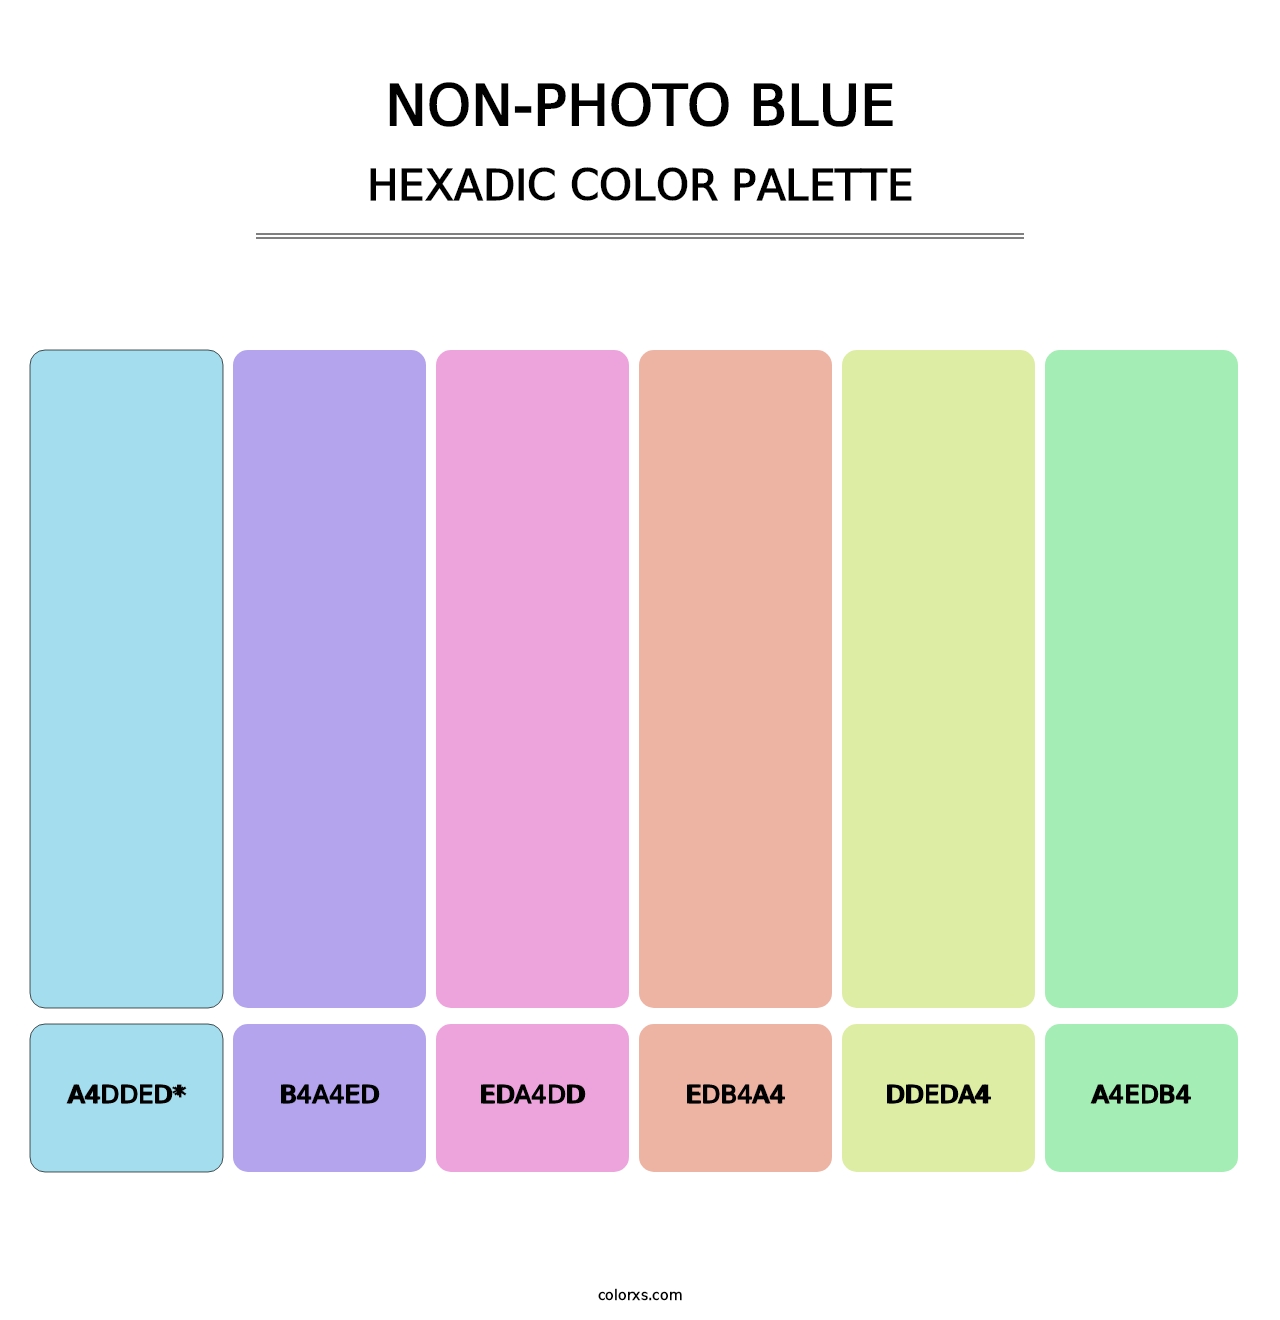 Non-photo Blue - Hexadic Color Palette